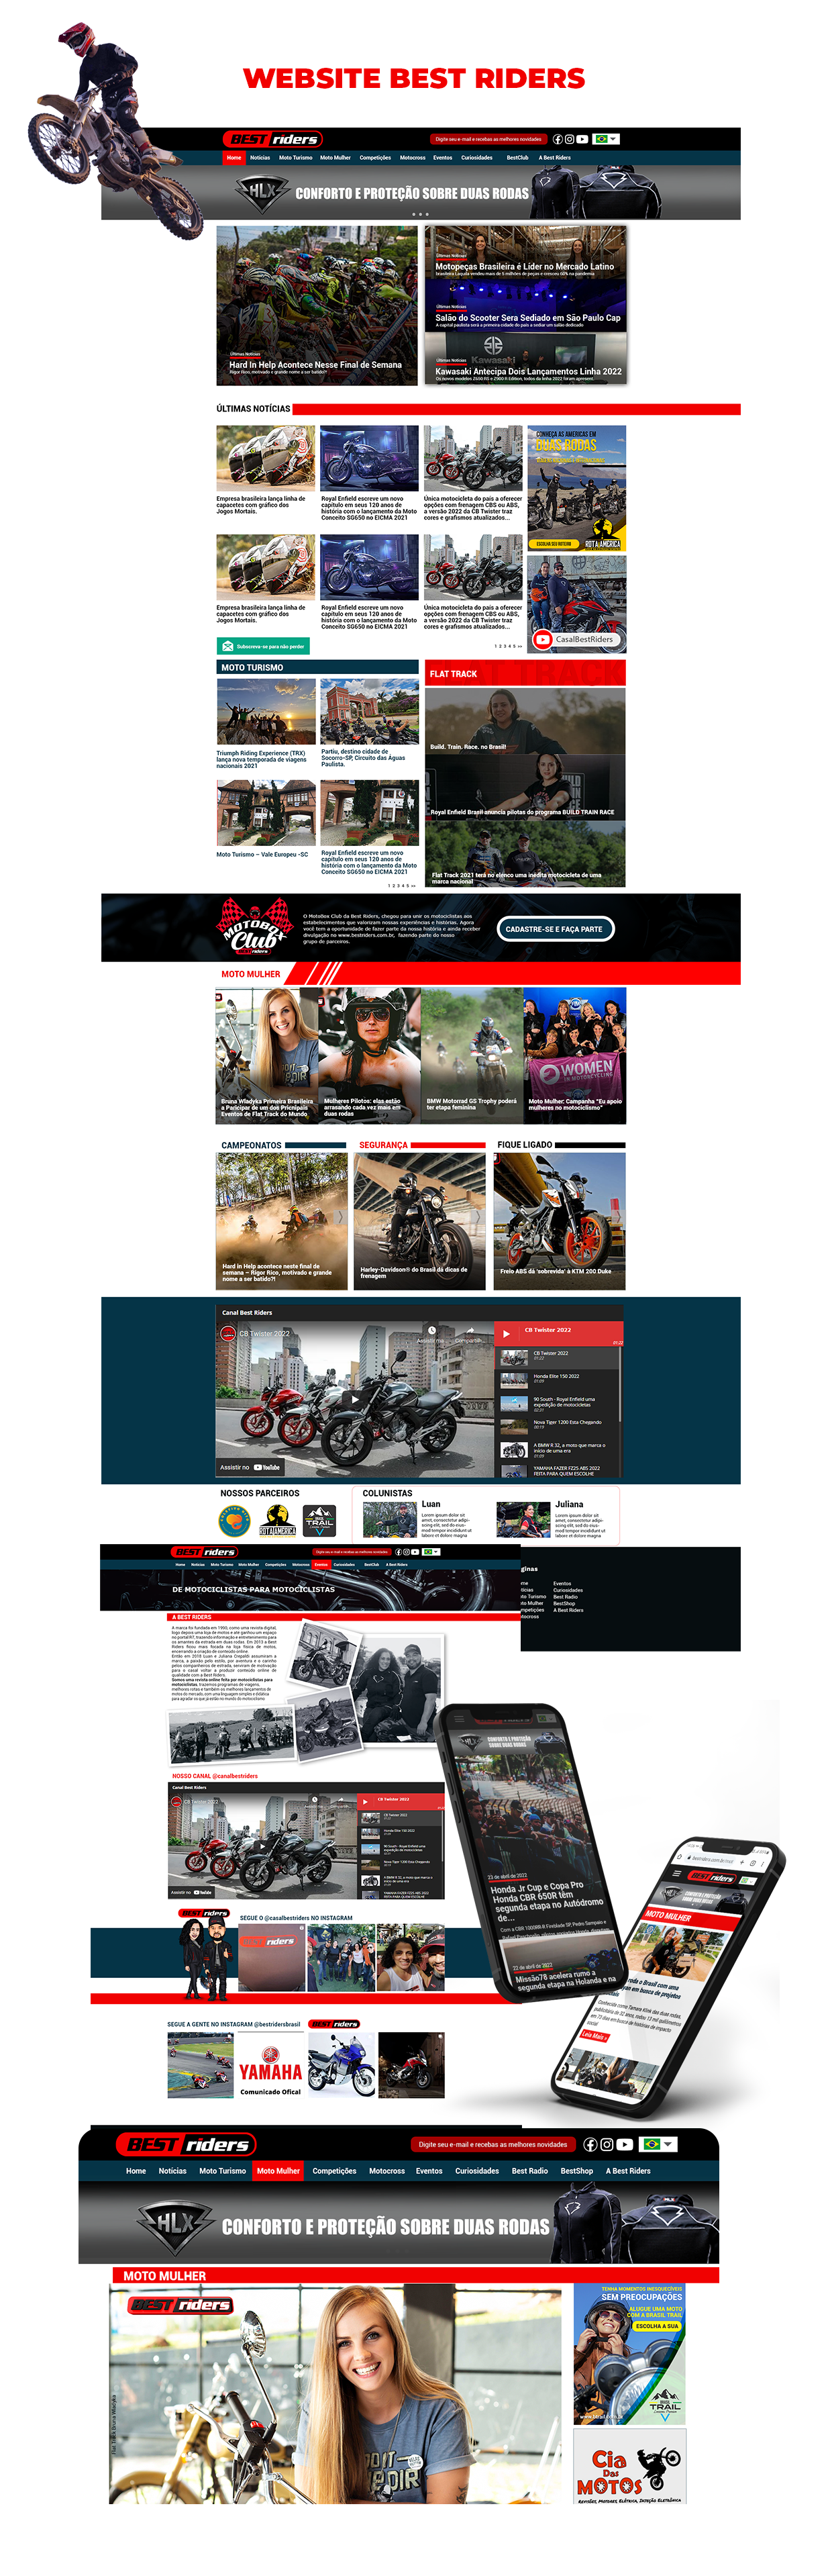 Website - Best Riders